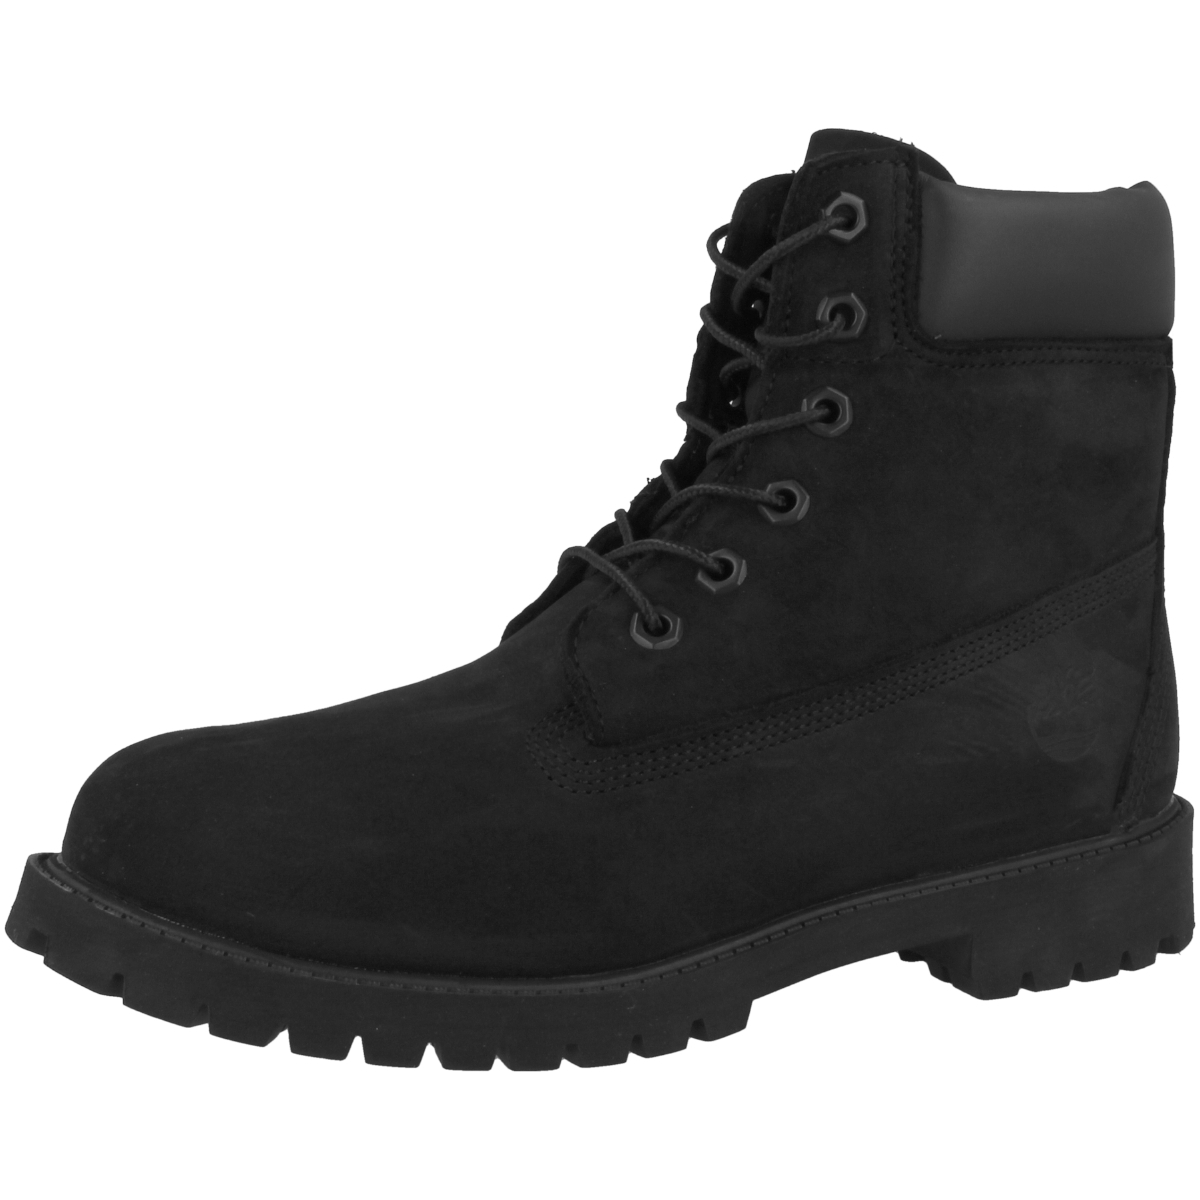 Timberland 6 Inch Premium Boots 12907 schwarz